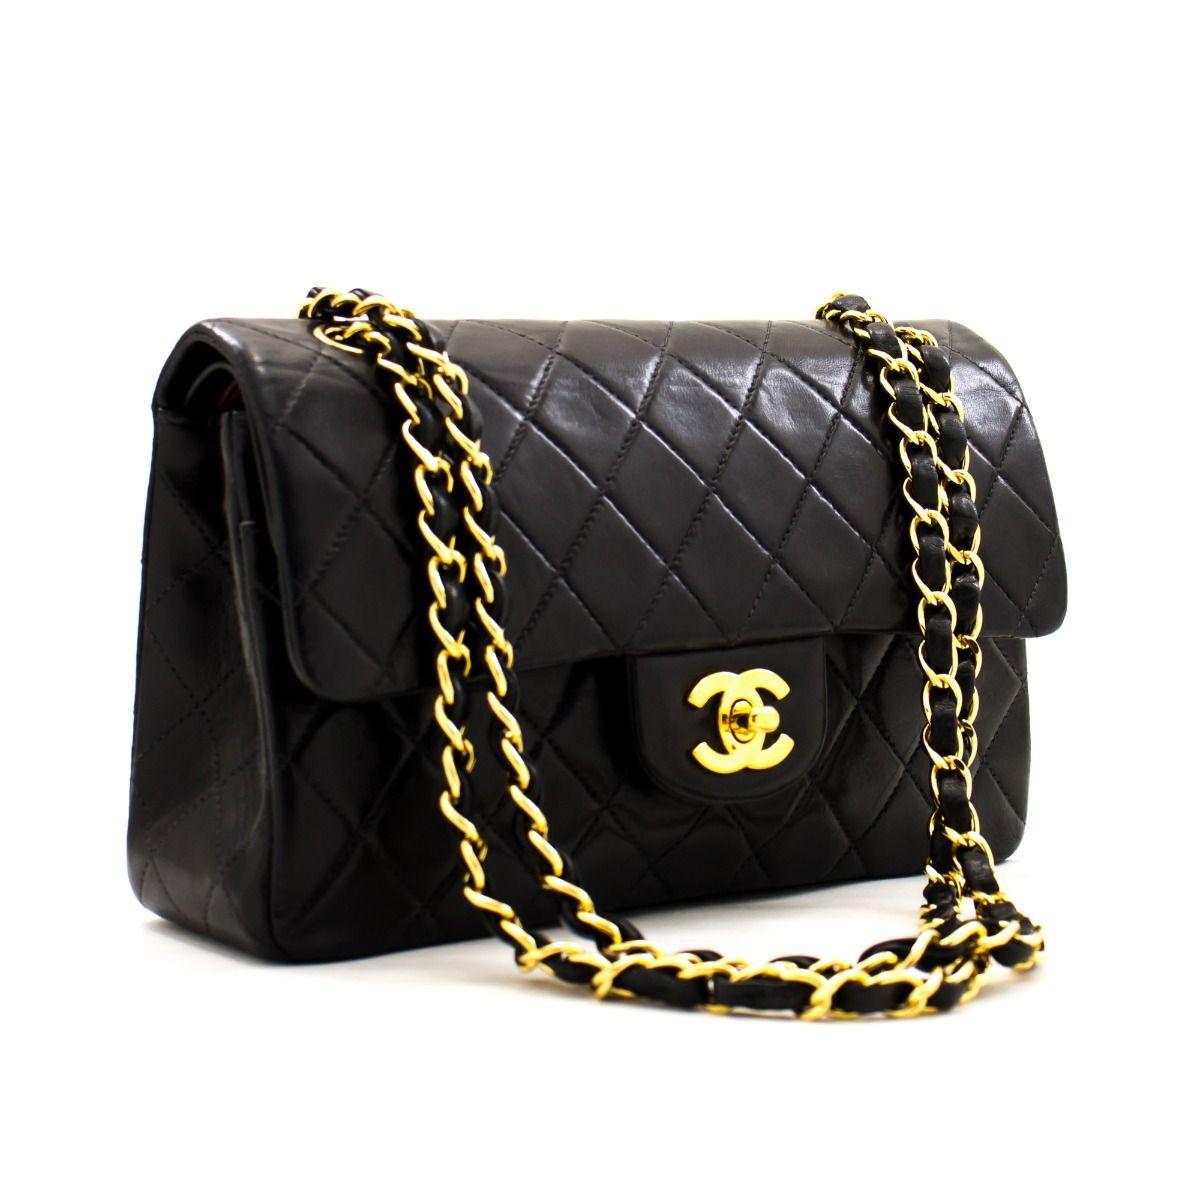 Ce sac iconique de Chanel, d'une taille de 9 pouces, est confectionné en cuir d'agneau noir matelassé et comporte un double rabat. Sur le rabat avant se trouve le logo CC classique à fermeture tournante, et sur le second rabat, une fermeture à clous